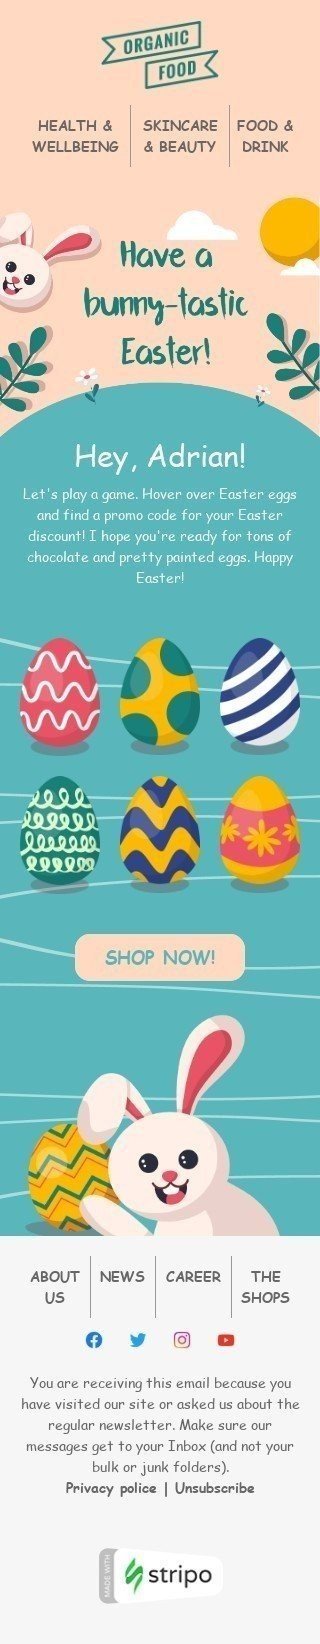 Plantilla de correo electrónico «¡Que tengas una Pascua conejita-tástica!» de Semana Santa para la industria de Productos orgánicos y ecológicos Vista de móvil